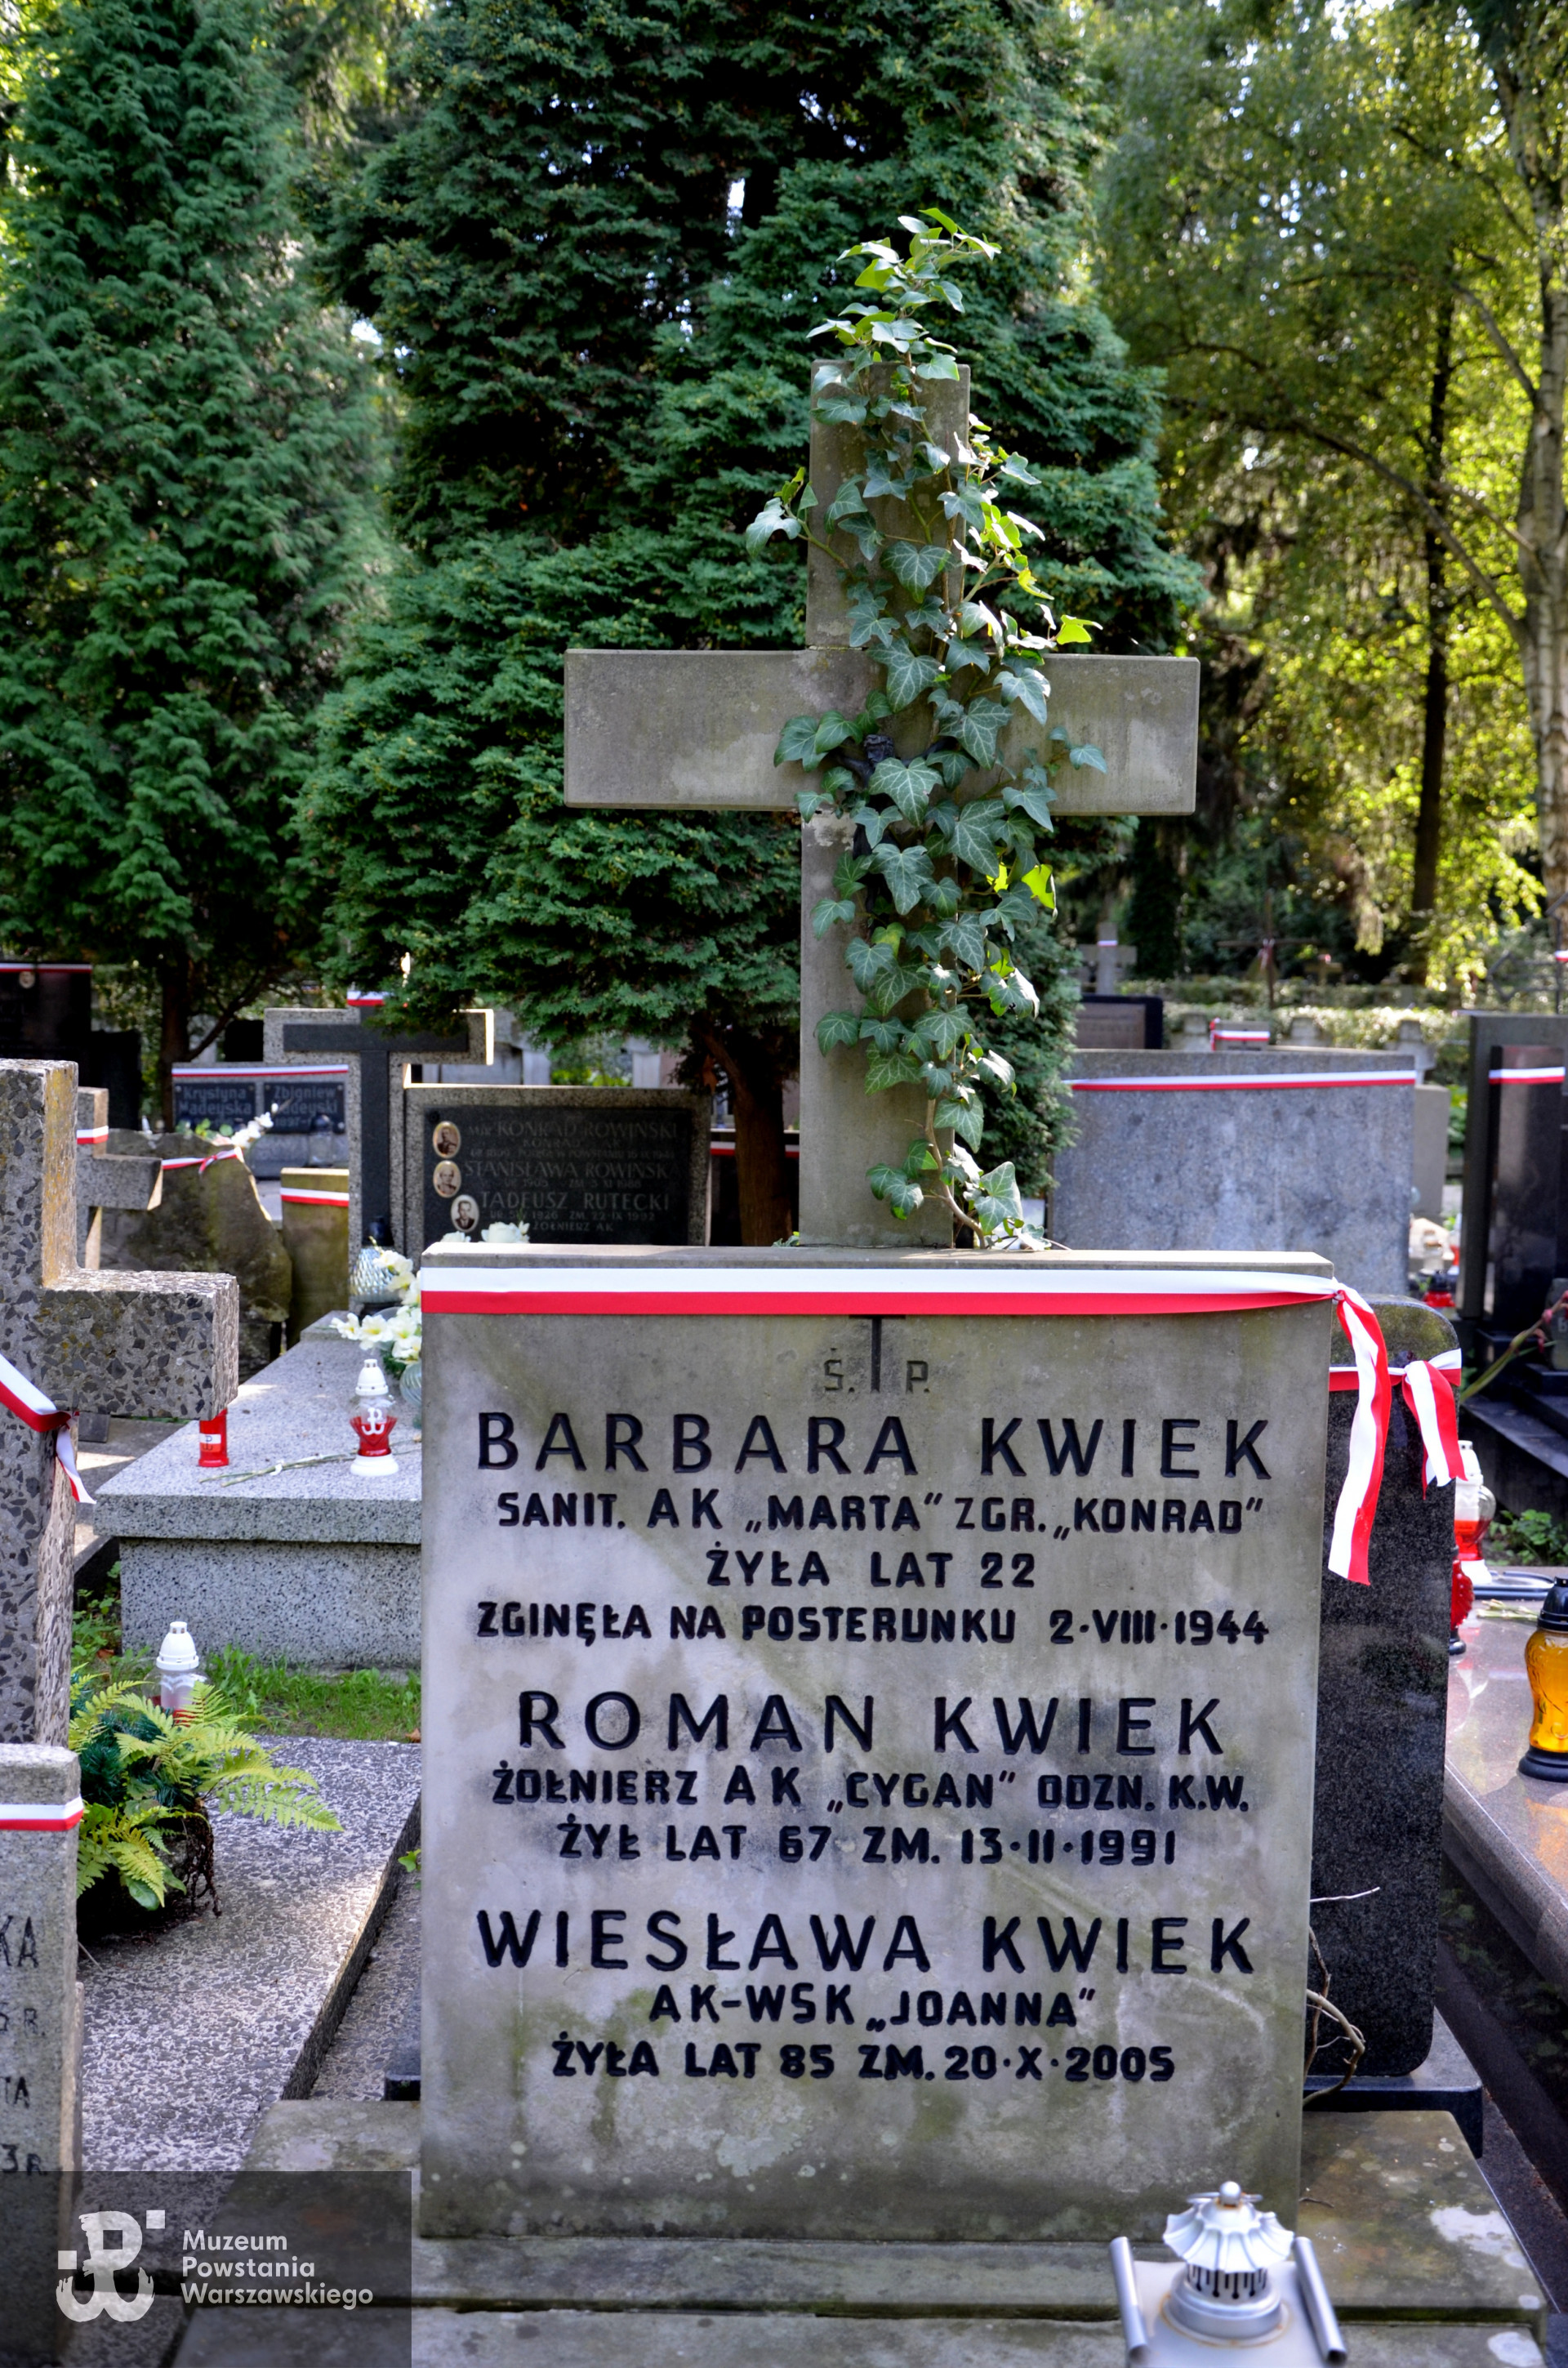 Warszawa, Cmentarz Wojskowy na Powązkach, kwatera A-23, rząd 7, grób 19. Zdjęcie mogiły autorstwa p. Anny Szarejko.